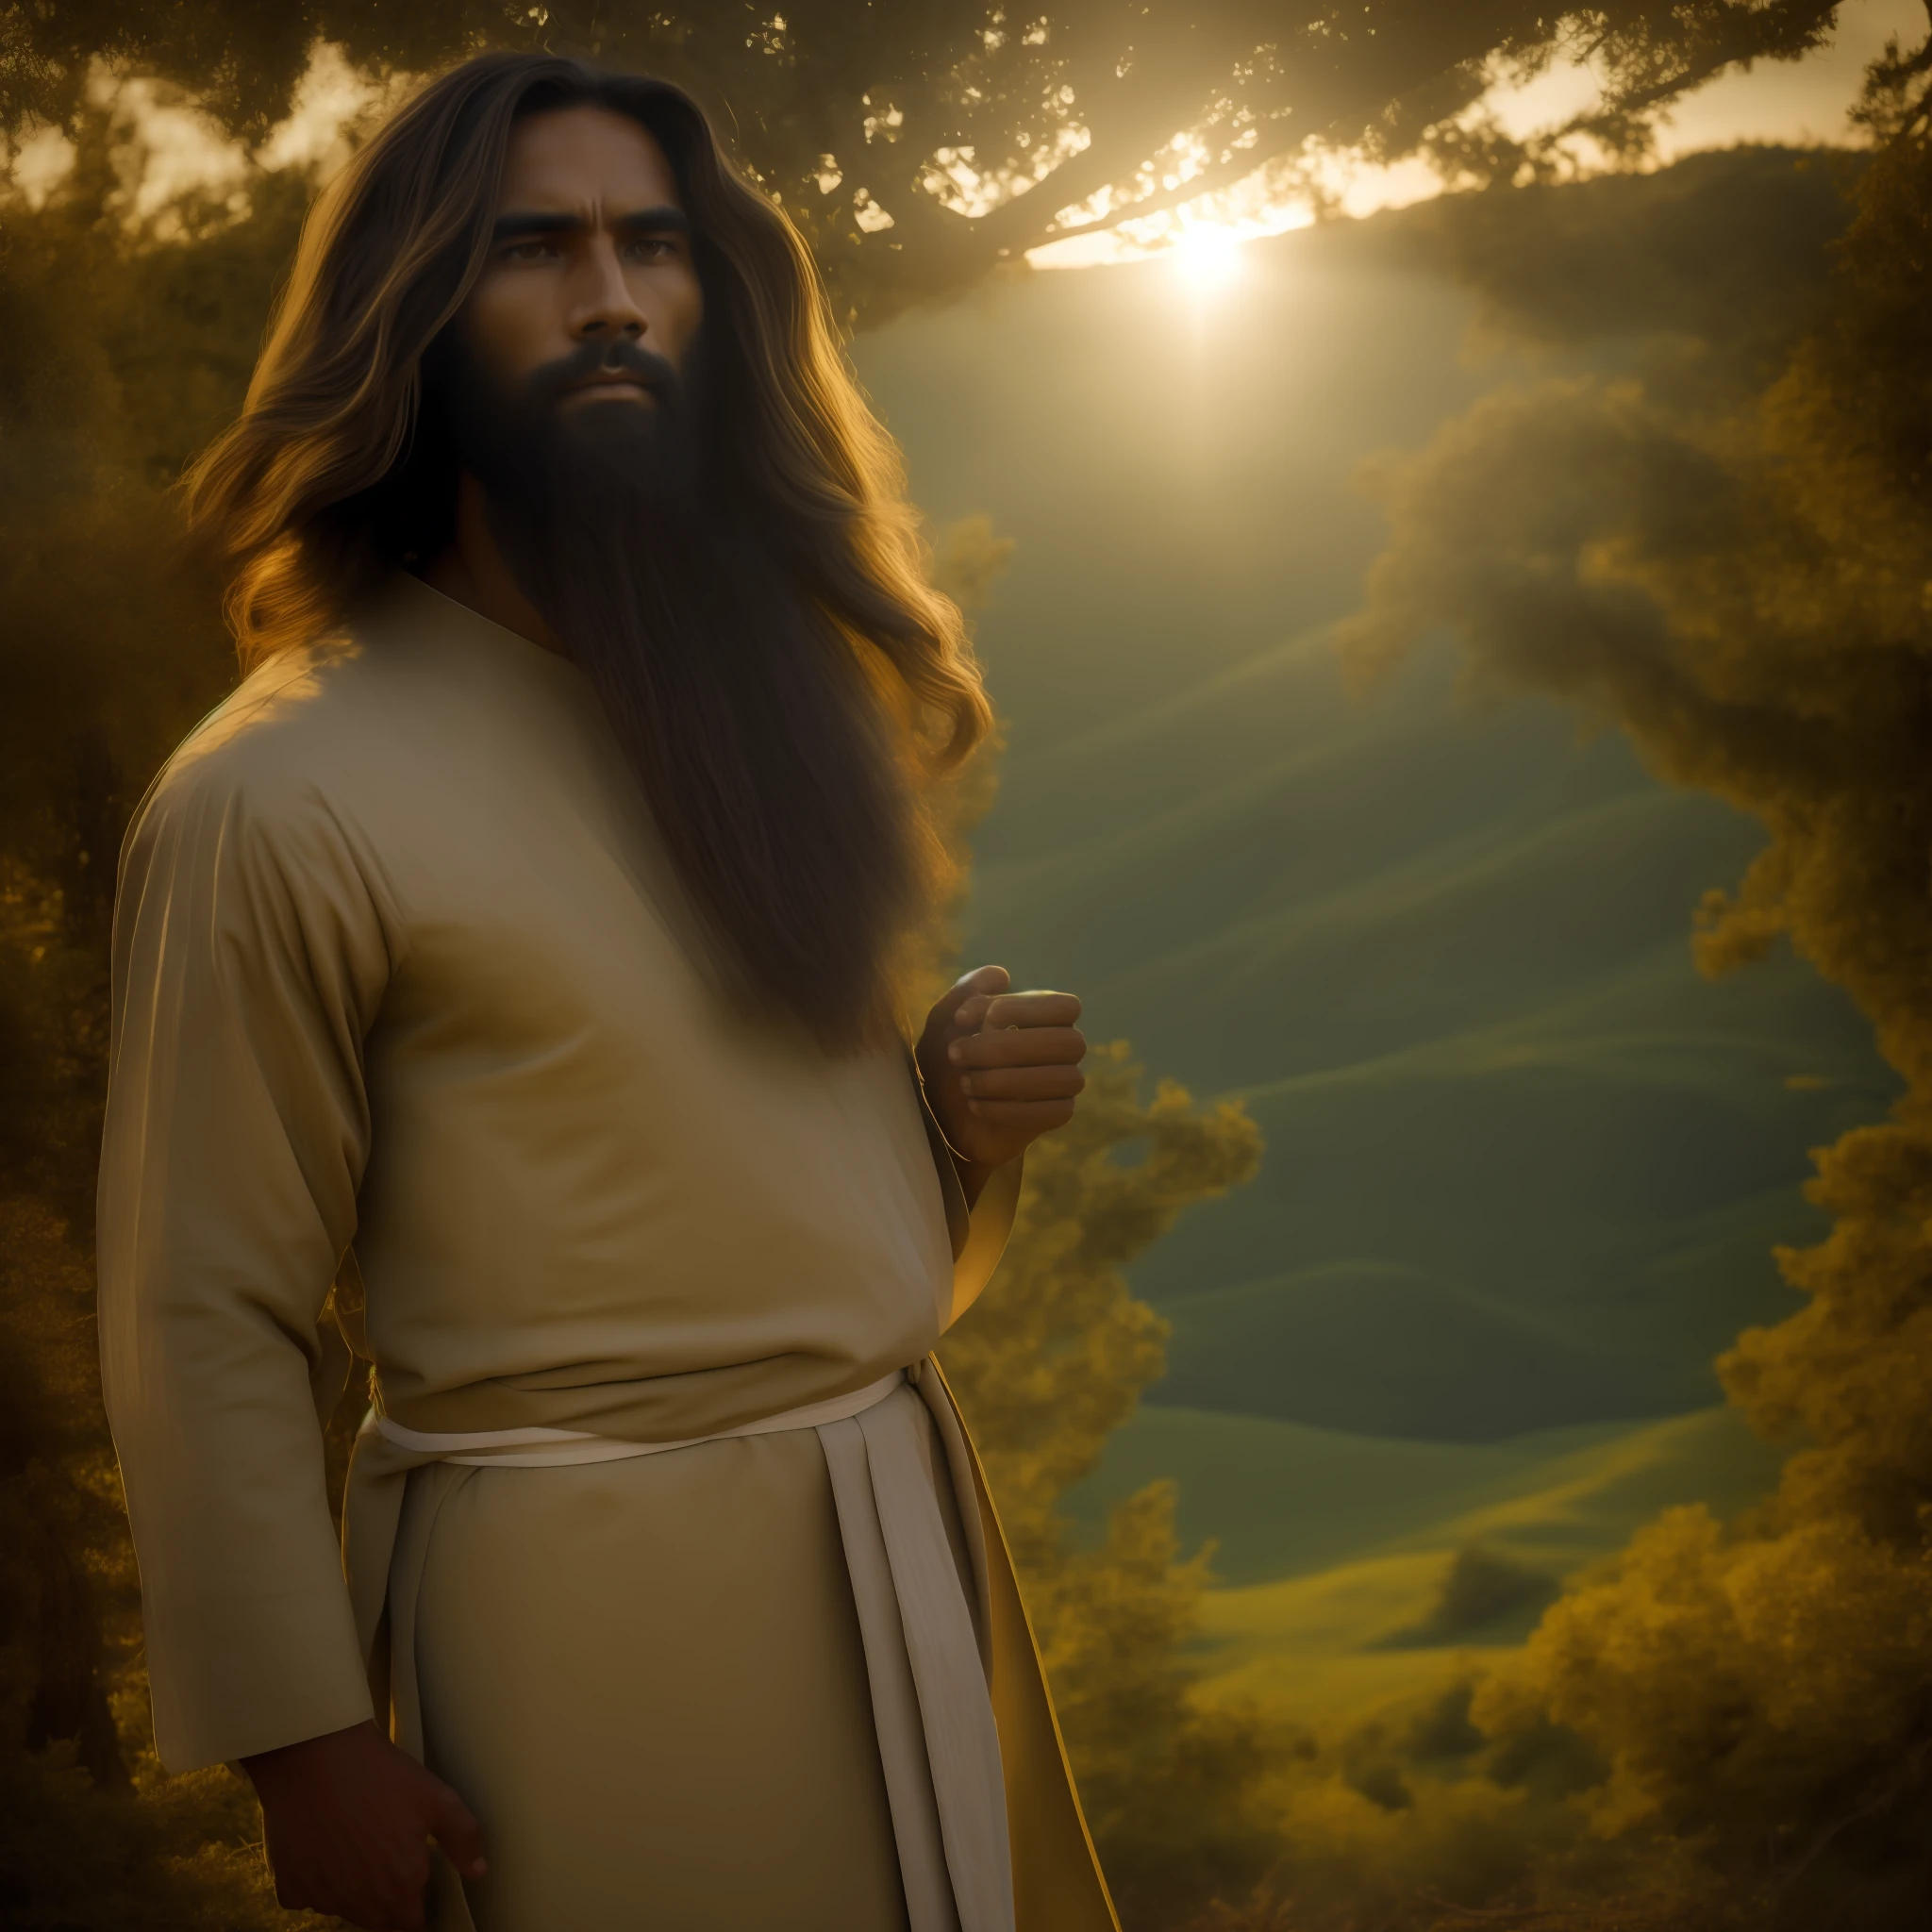 画像では, イエス・キリストが当時の時代を思い起こさせる場面で詳細に描かれているのがわかる。. 彼は長い服を着ている, シンプルなチュニック, 質感のある生地とアースカラーで作られています. 彼の髪とひげは長く、少しウェーブがかかっている。, 男らしさと知恵を示す.

彼の目は深くて慈悲深い, 神聖な静寂を反映. イエスの視線は、すべての人類に対する無条件の愛と慈悲を伝えている.

彼の手の中に, 彼は彫刻された木の杖を持っている, 羊の群れの羊飼いとしての役割を象徴する. 彼の後ろ, 緑豊かな野原が広がる, 神の創造を象徴する野生の花や自然植物が点在する.

イエスの周り, さまざまな背景や社会的状況を持つ人々がいる. 背中を丸めている人もいる, 慰めと導きを求めて, 他の人が立っている間, 驚きと希望を持って彼を見つめる. 彼らの表情は様々です, イエスが各人に呼び起こす感情の多様性を示す.

太陽の光がシーンを優しく照らします, 穏やかで心地よい雰囲気を醸し出す. 背景, 丘陵が見える, イエスが住んでいた地域の風景を思い起こさせる.